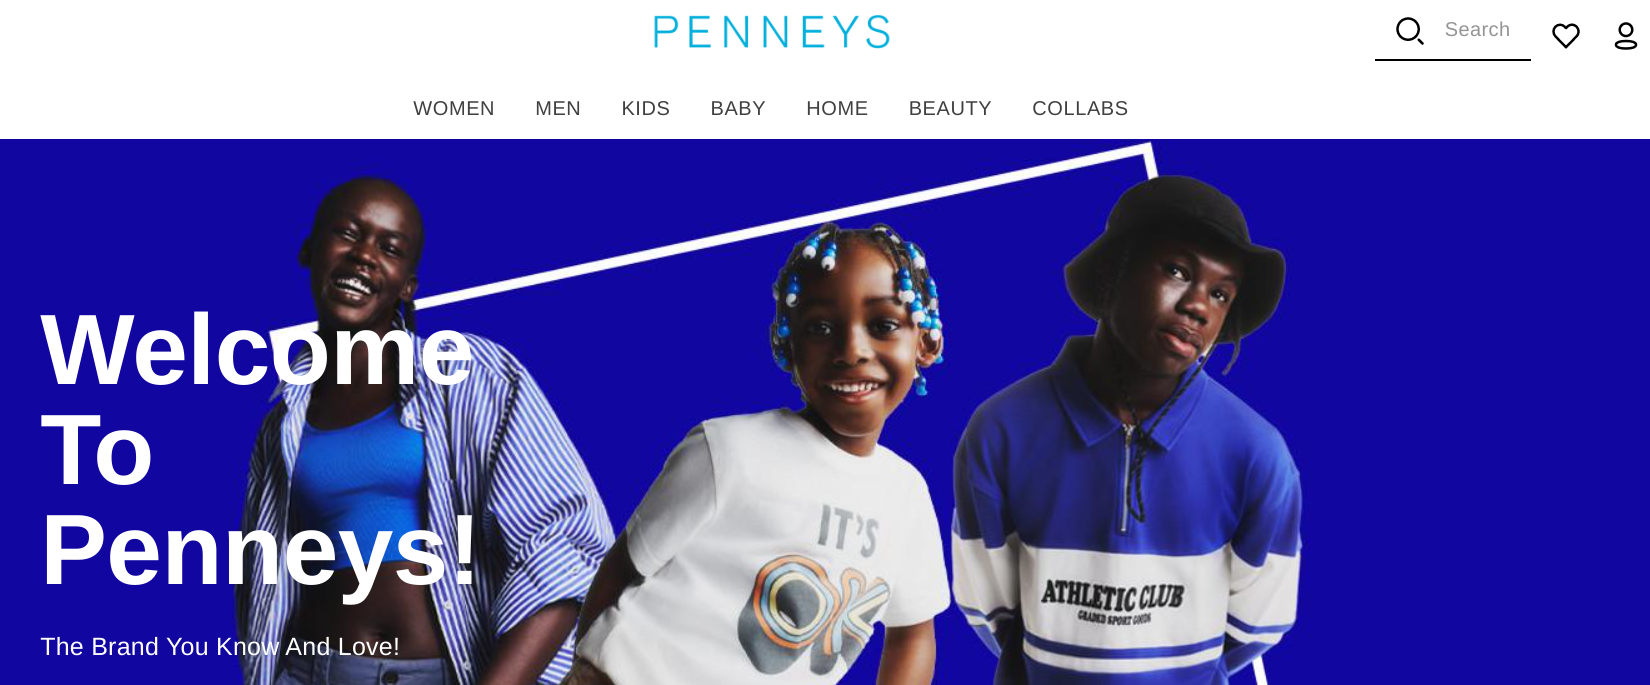 Pennneys Ireland website launch - techbuzzireland